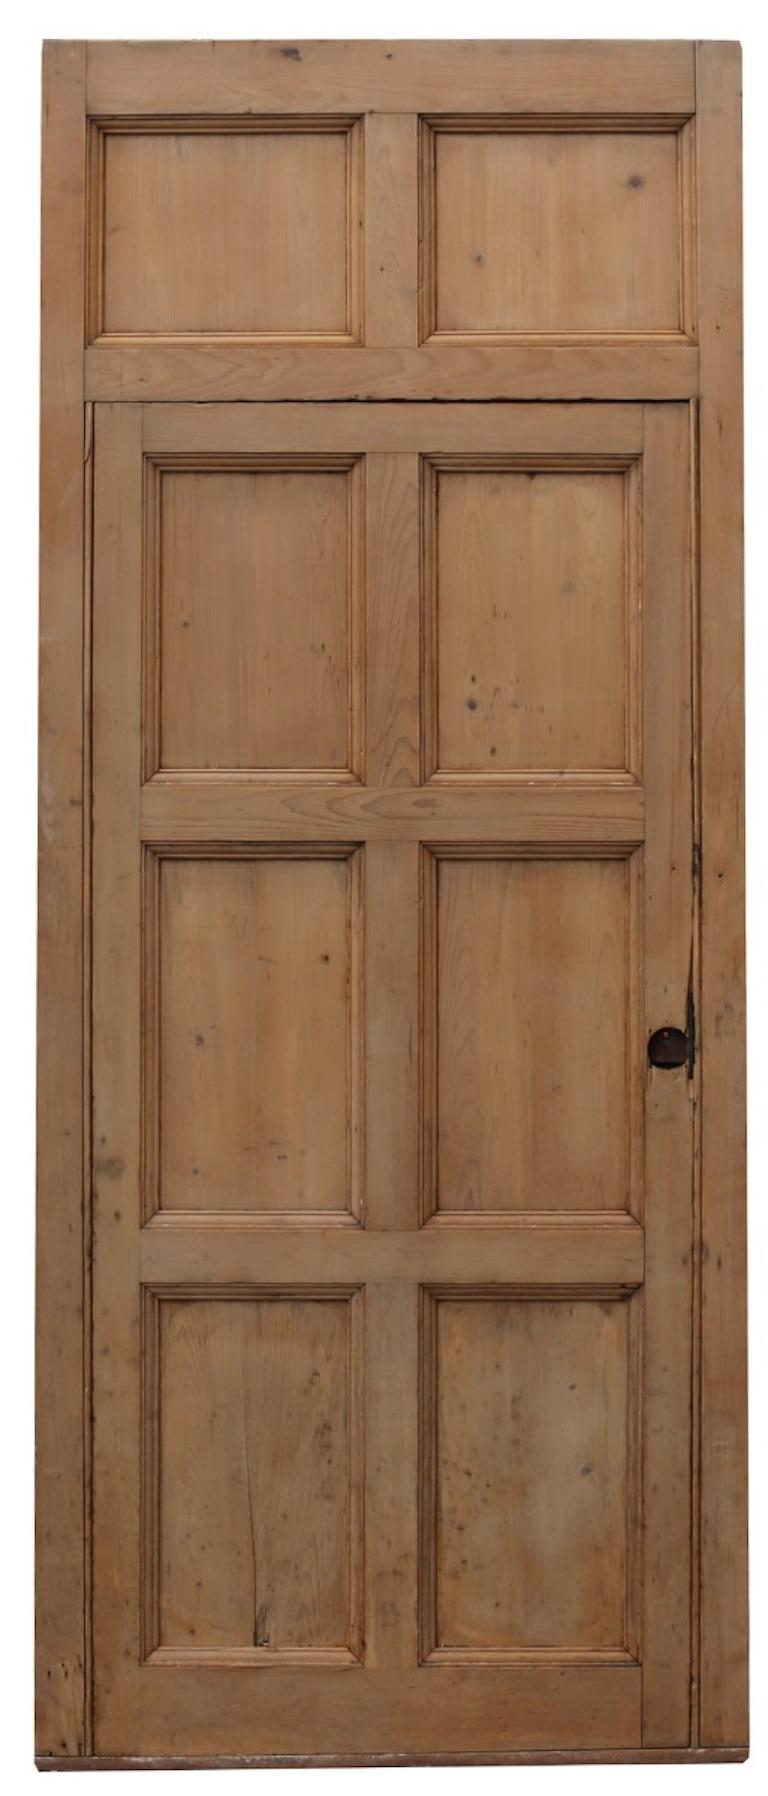 Eine wiederhergestellte Tür in ihrem ursprünglichen Rahmen.

Zusätzliche Abmessungen:

Insgesamt

Höhe 251 cm

Breite 104 cm

Dicke 5 cm

Tür

Höhe 195 cm

Breite 86,5 cm

Dicke 4 cm.